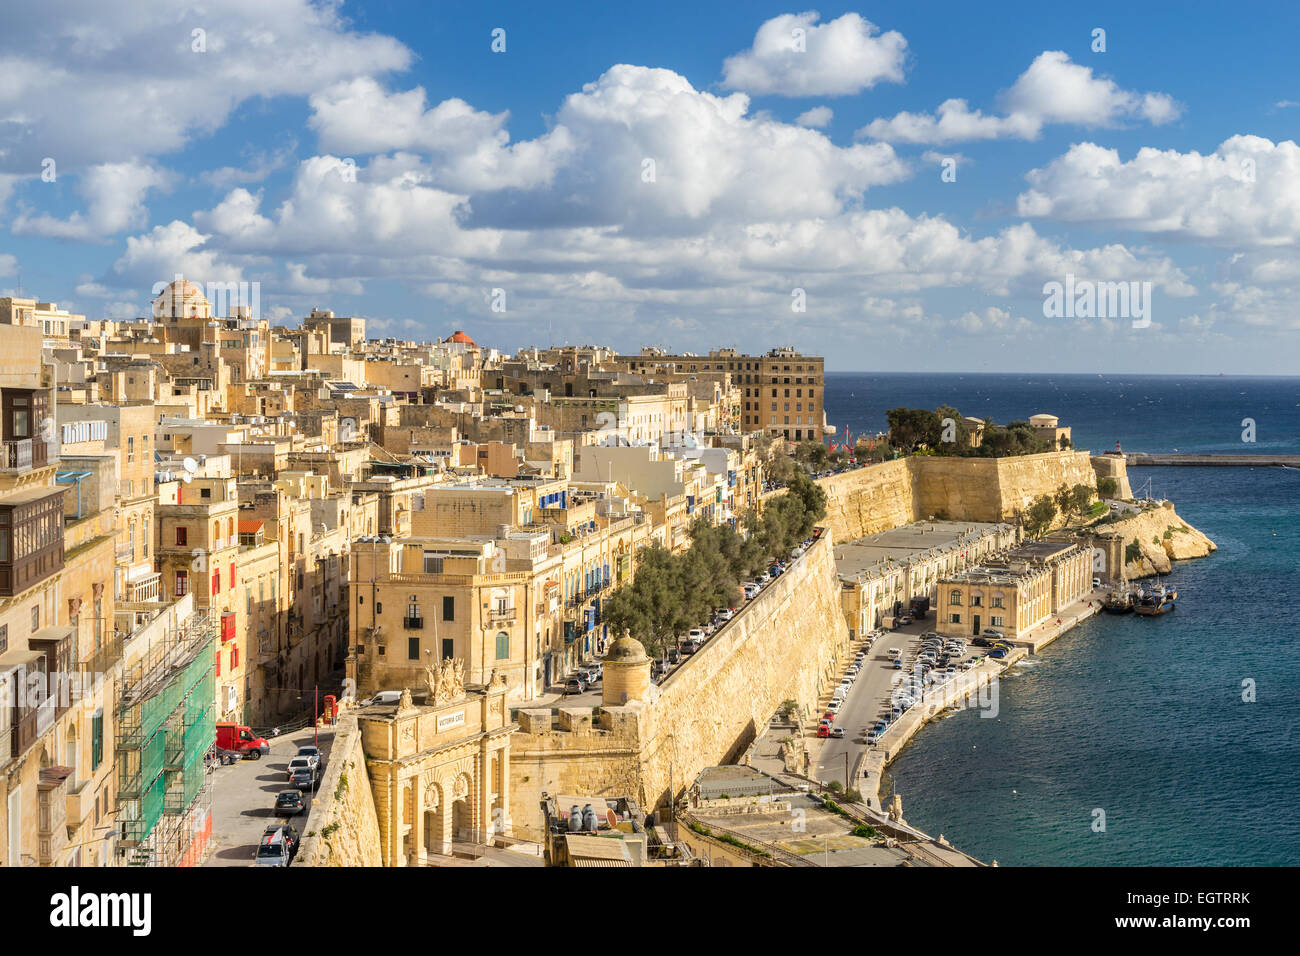 Looking across Valletta Stock Photo